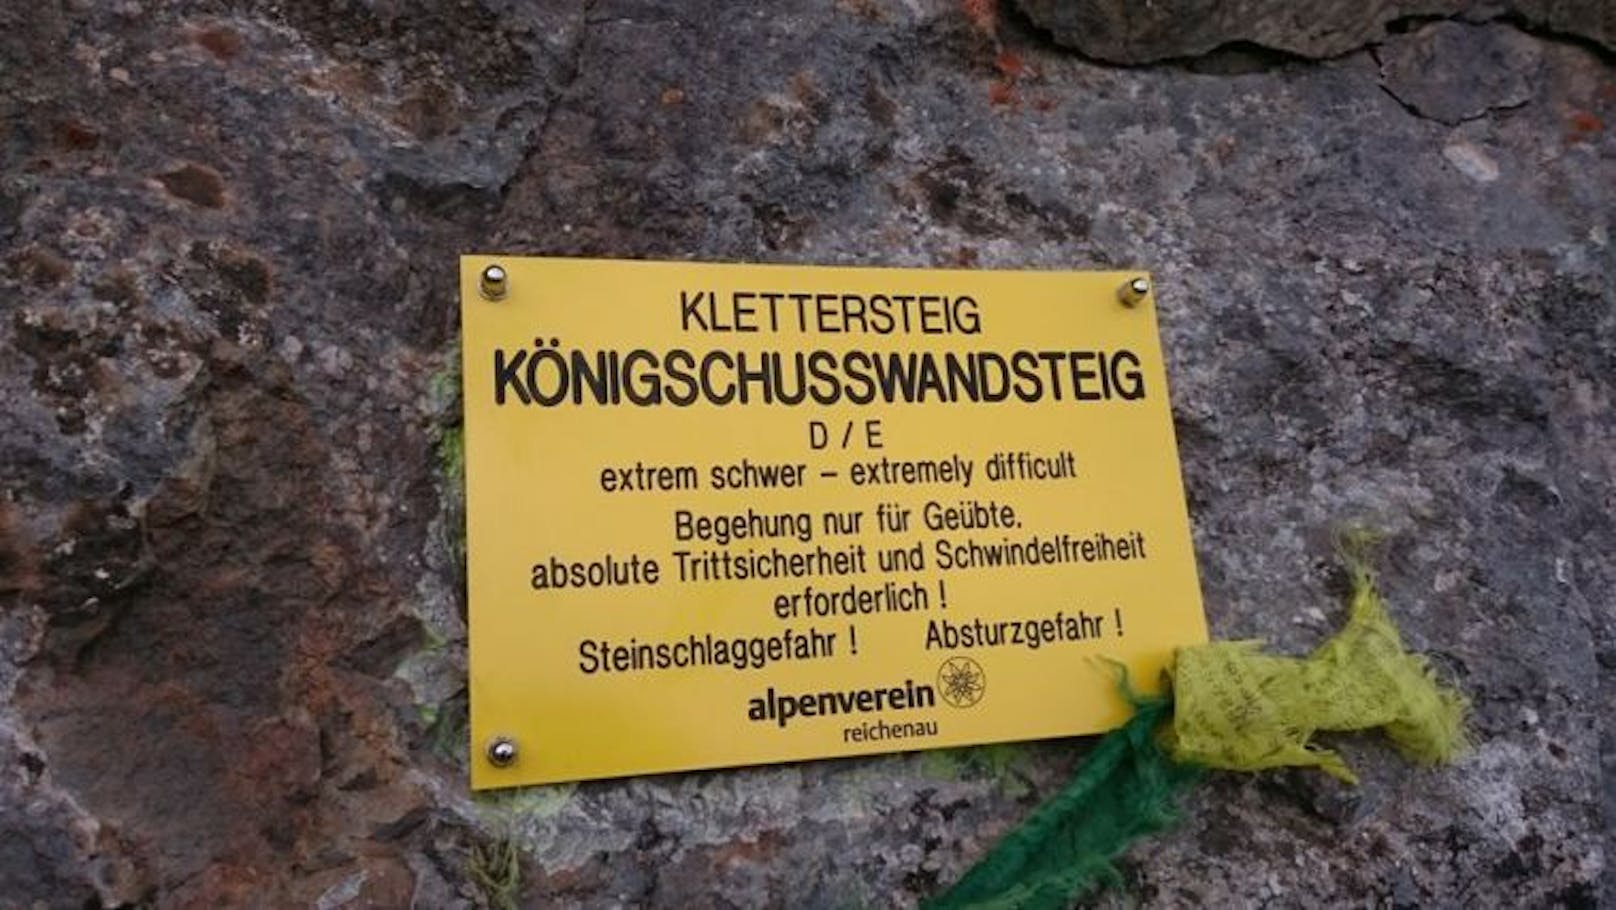 Frau geriet in "extrem schweren" Klettersteig.